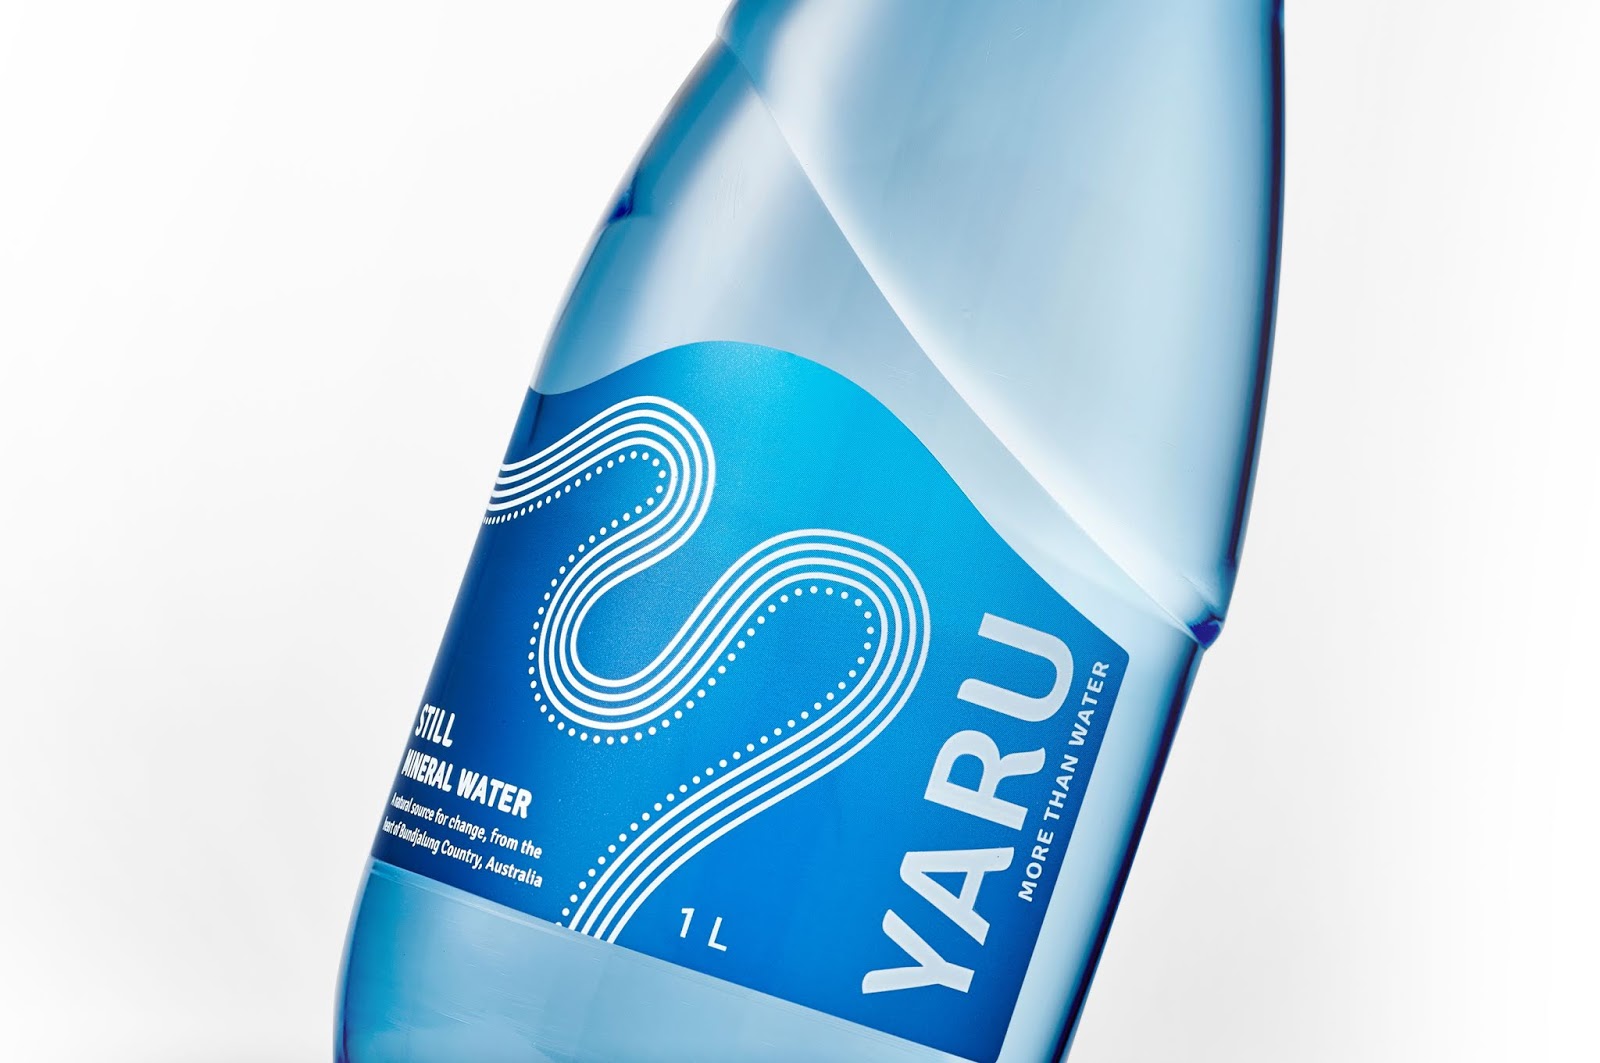 不仅仅是水 澳大利亚Yaru纯净水包装